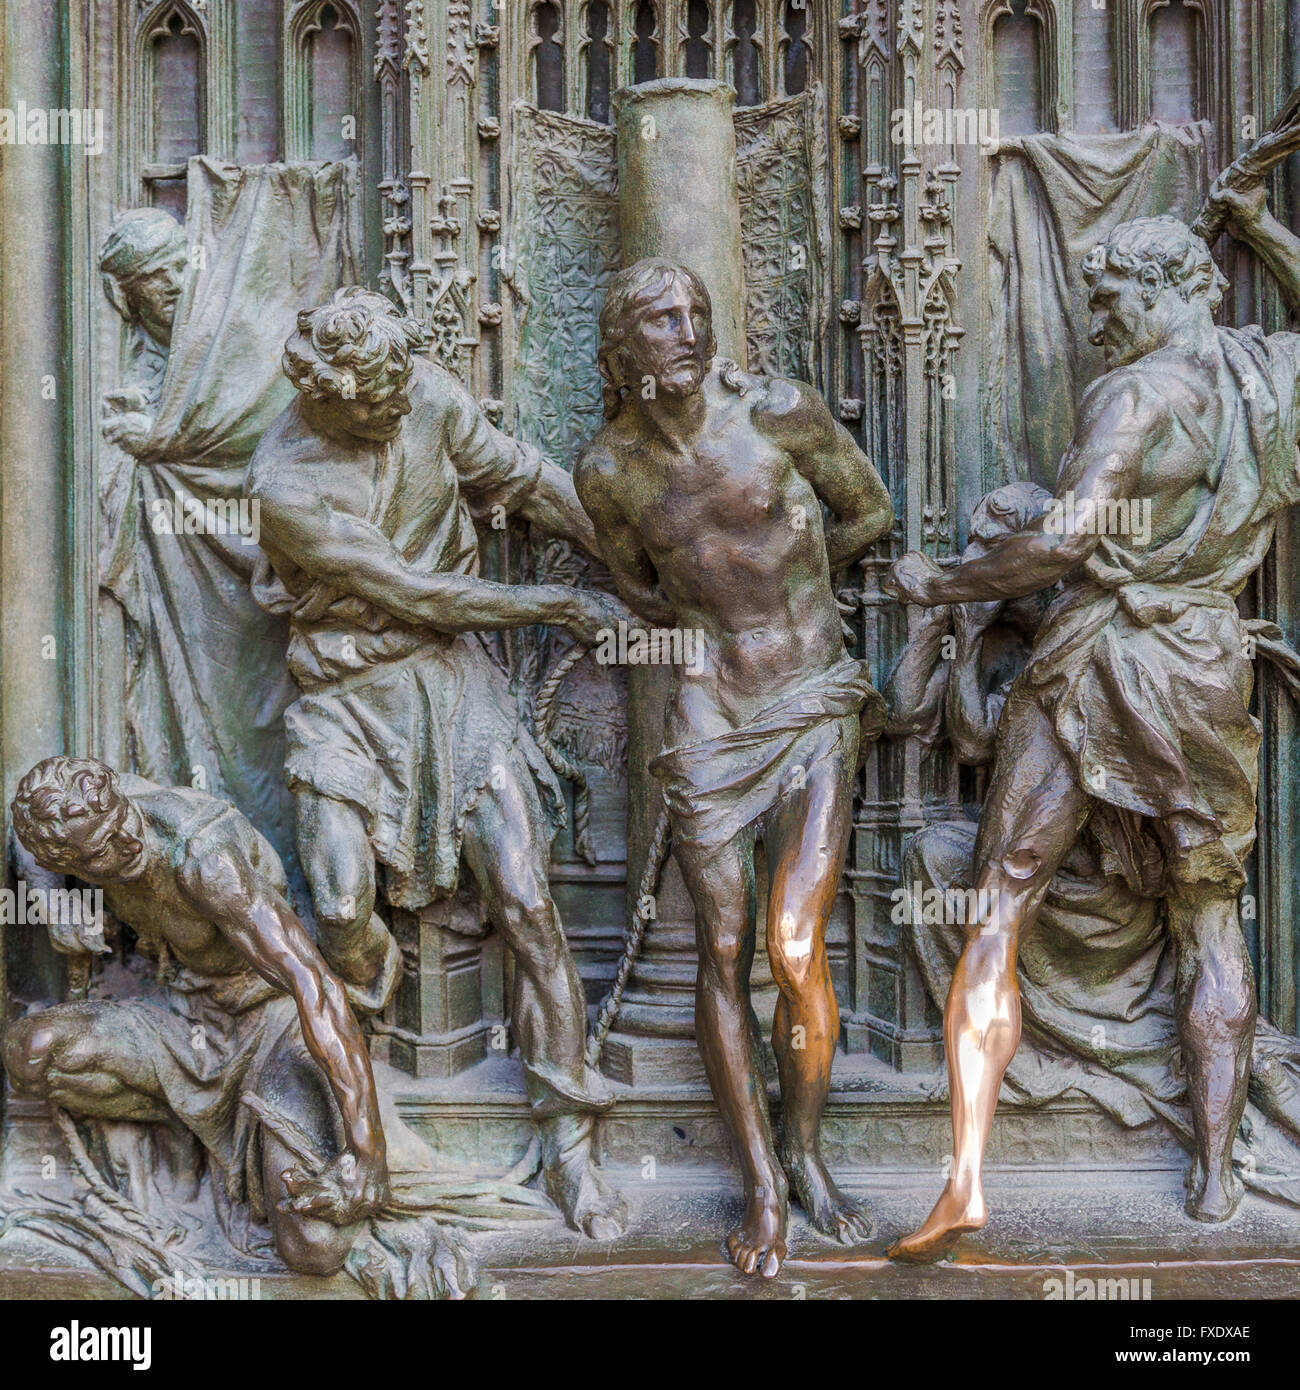 Esculturas de bronce en el portal de entrada de la catedral de Milán, la Piazza del Duomo, Milan, Italia. Foto de stock